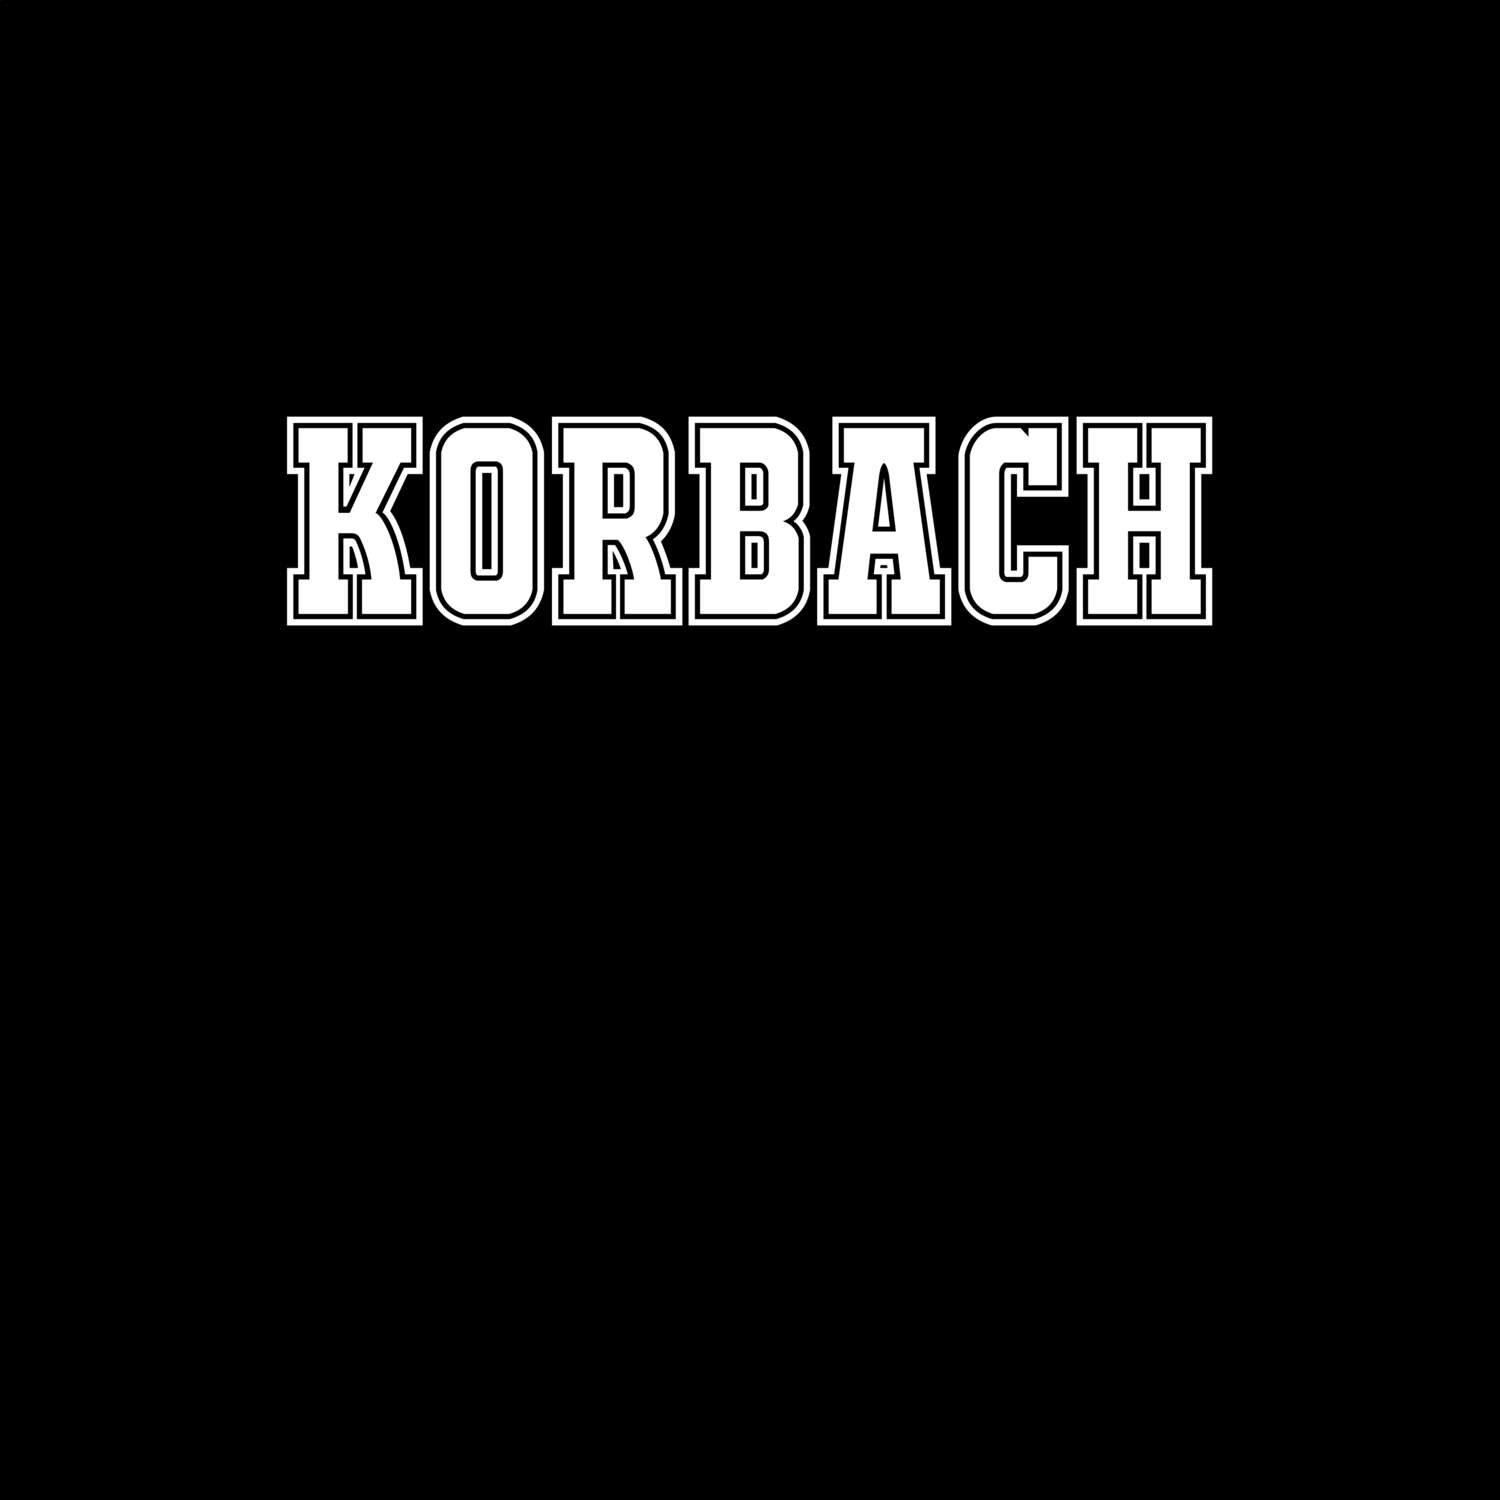 Korbach T-Shirt »Classic«